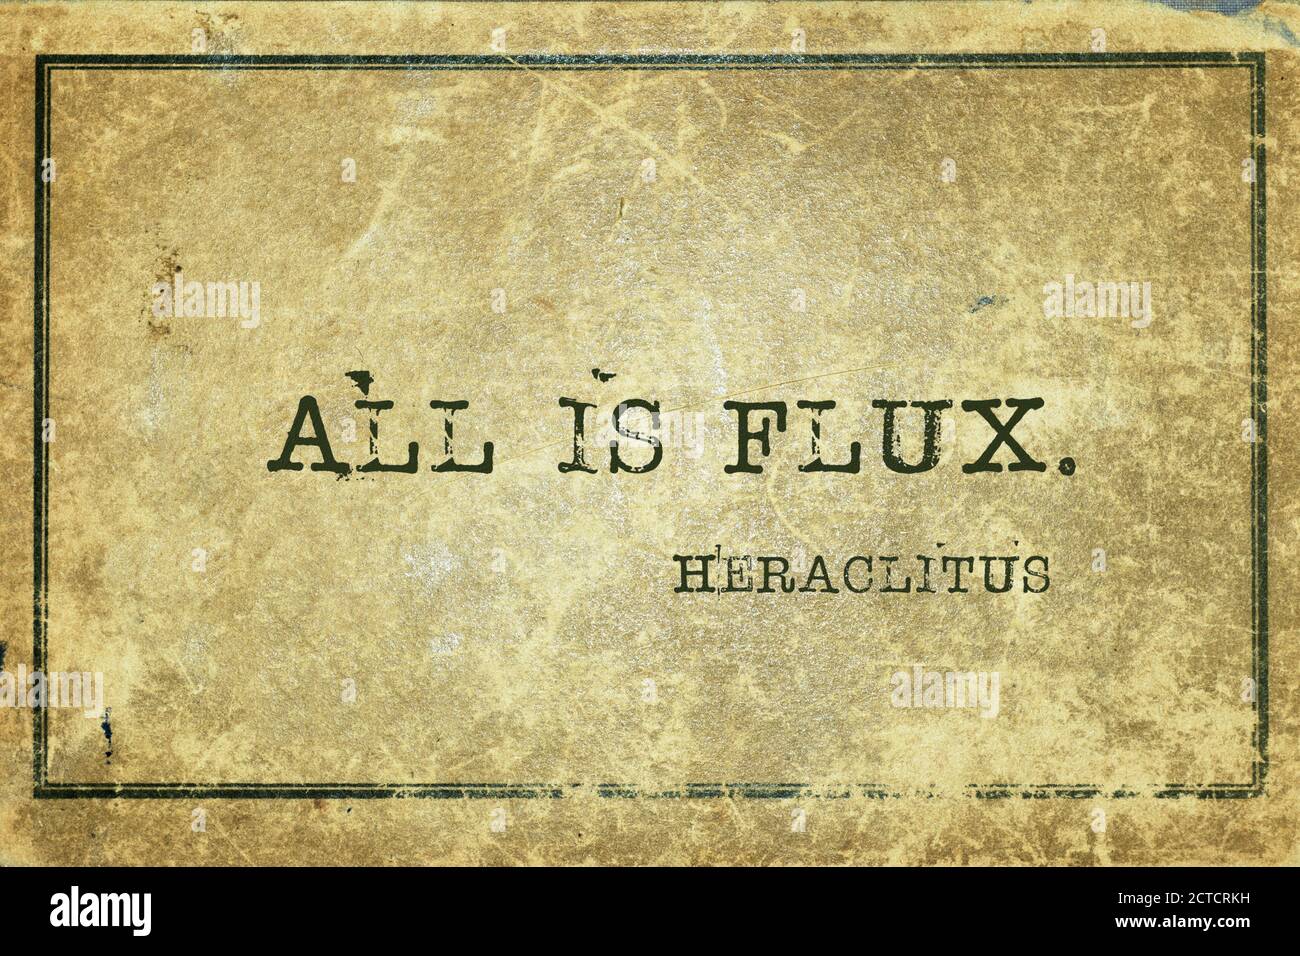 Tutto è flusso - antico filosofo greco Heraclitus citazione stampata su cartone vintage grunge Foto Stock